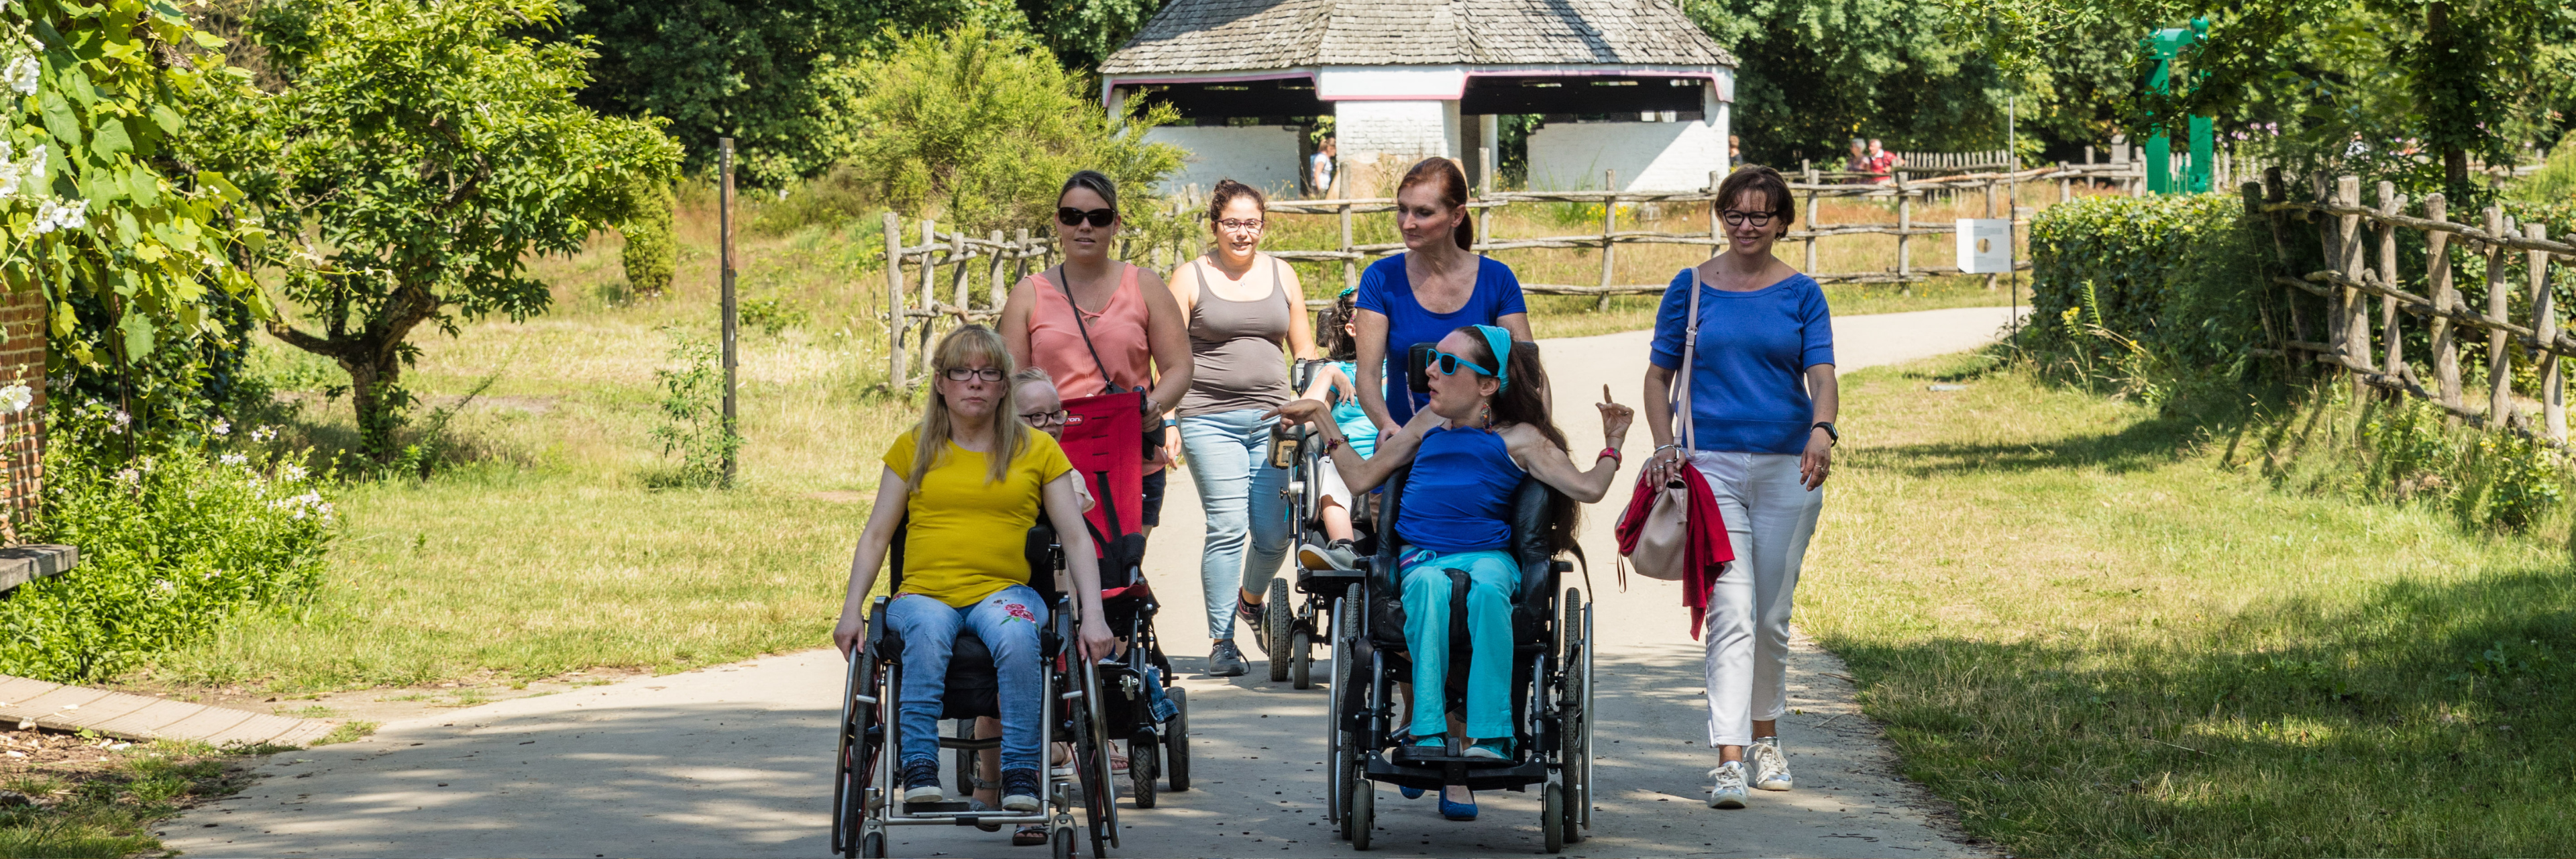 Begelide rolstoelgebruikers in het openluchtmuseum Bokrijk